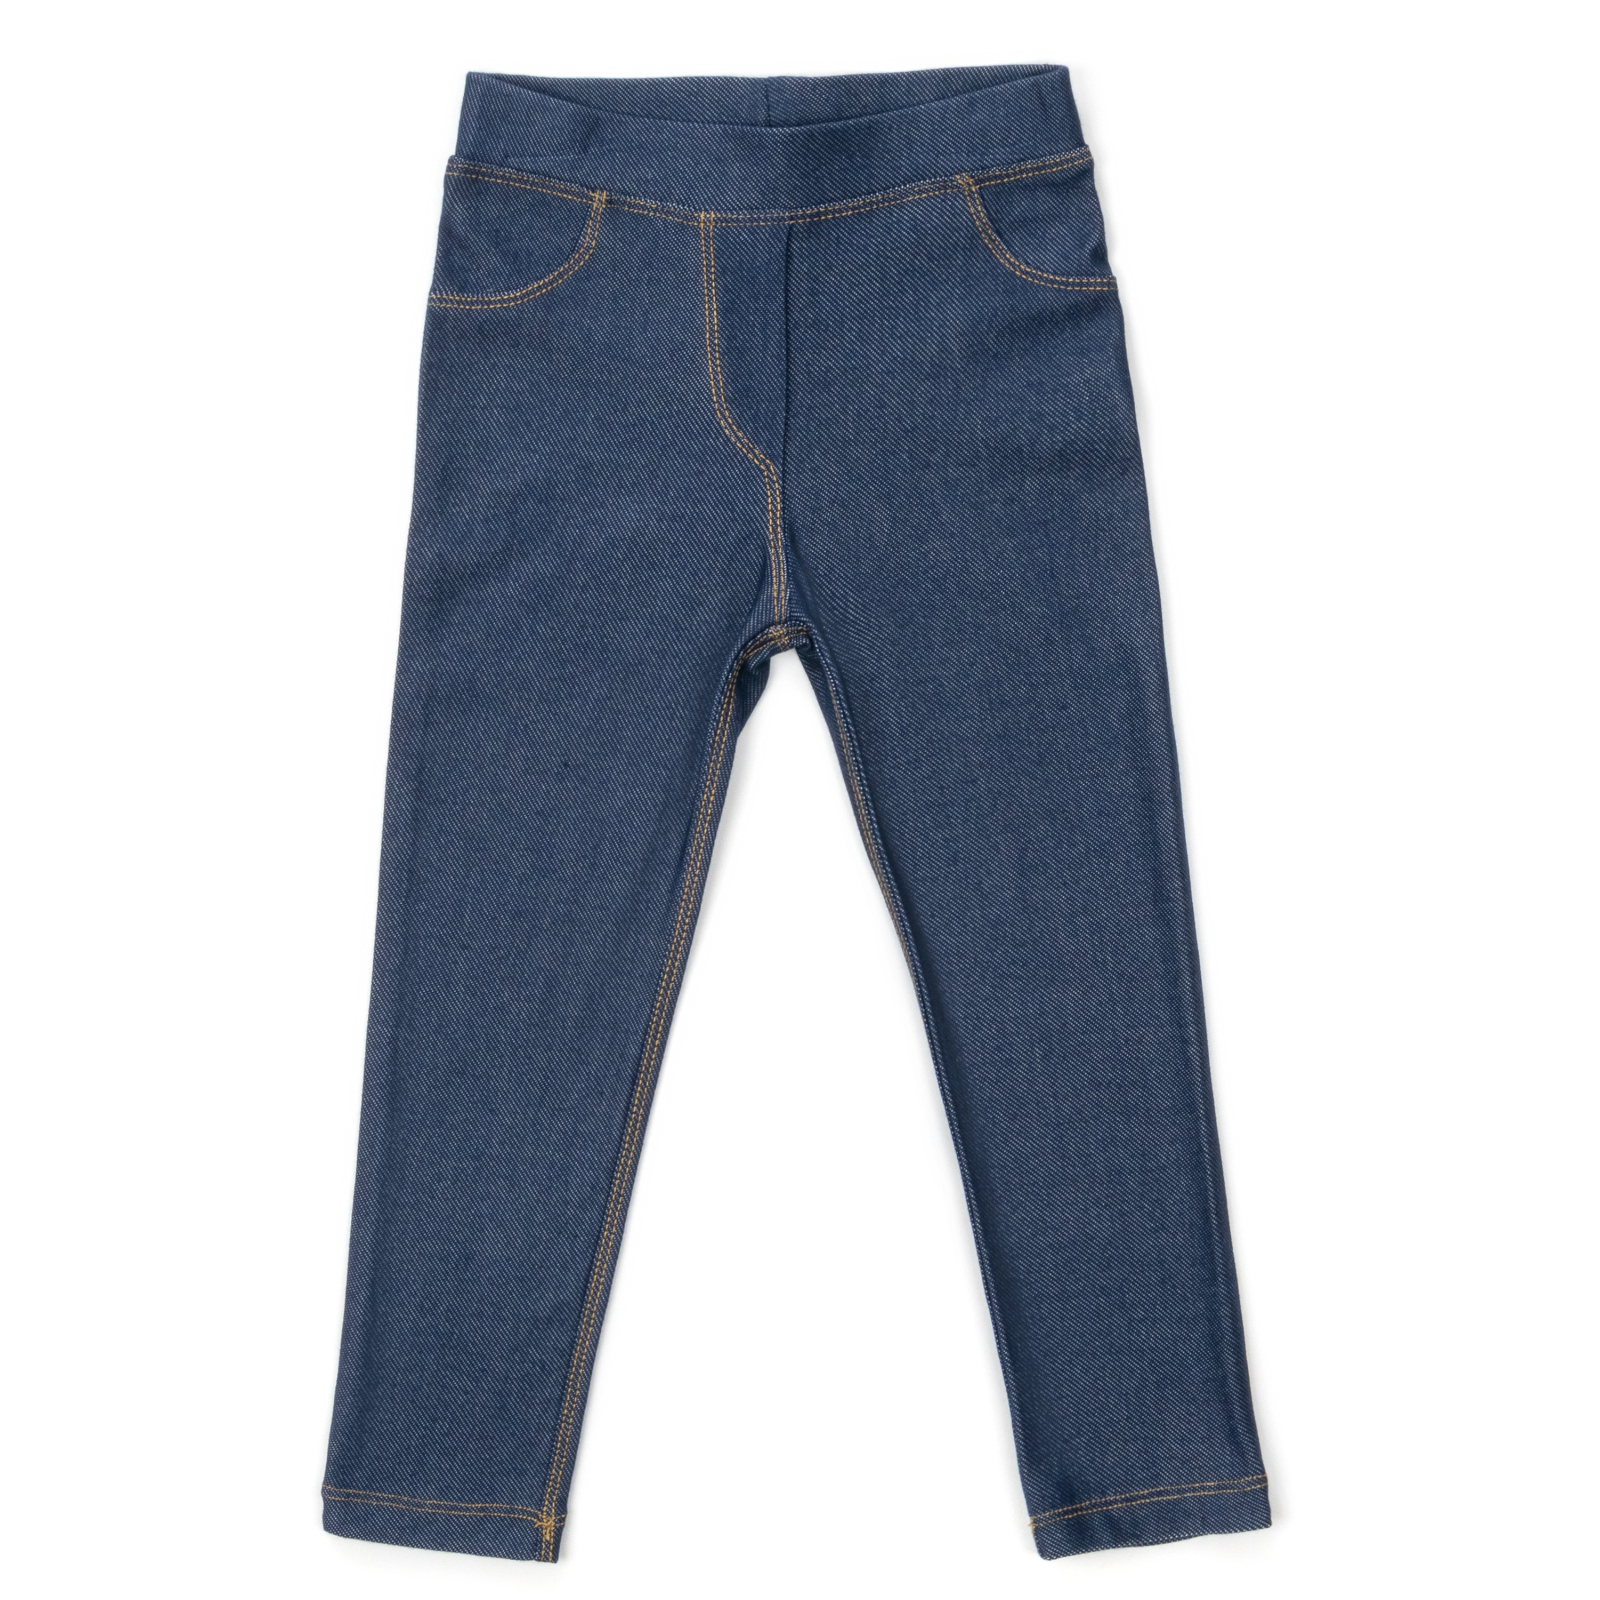 Лосины Breeze трикотажные (4415-110G-jeans)